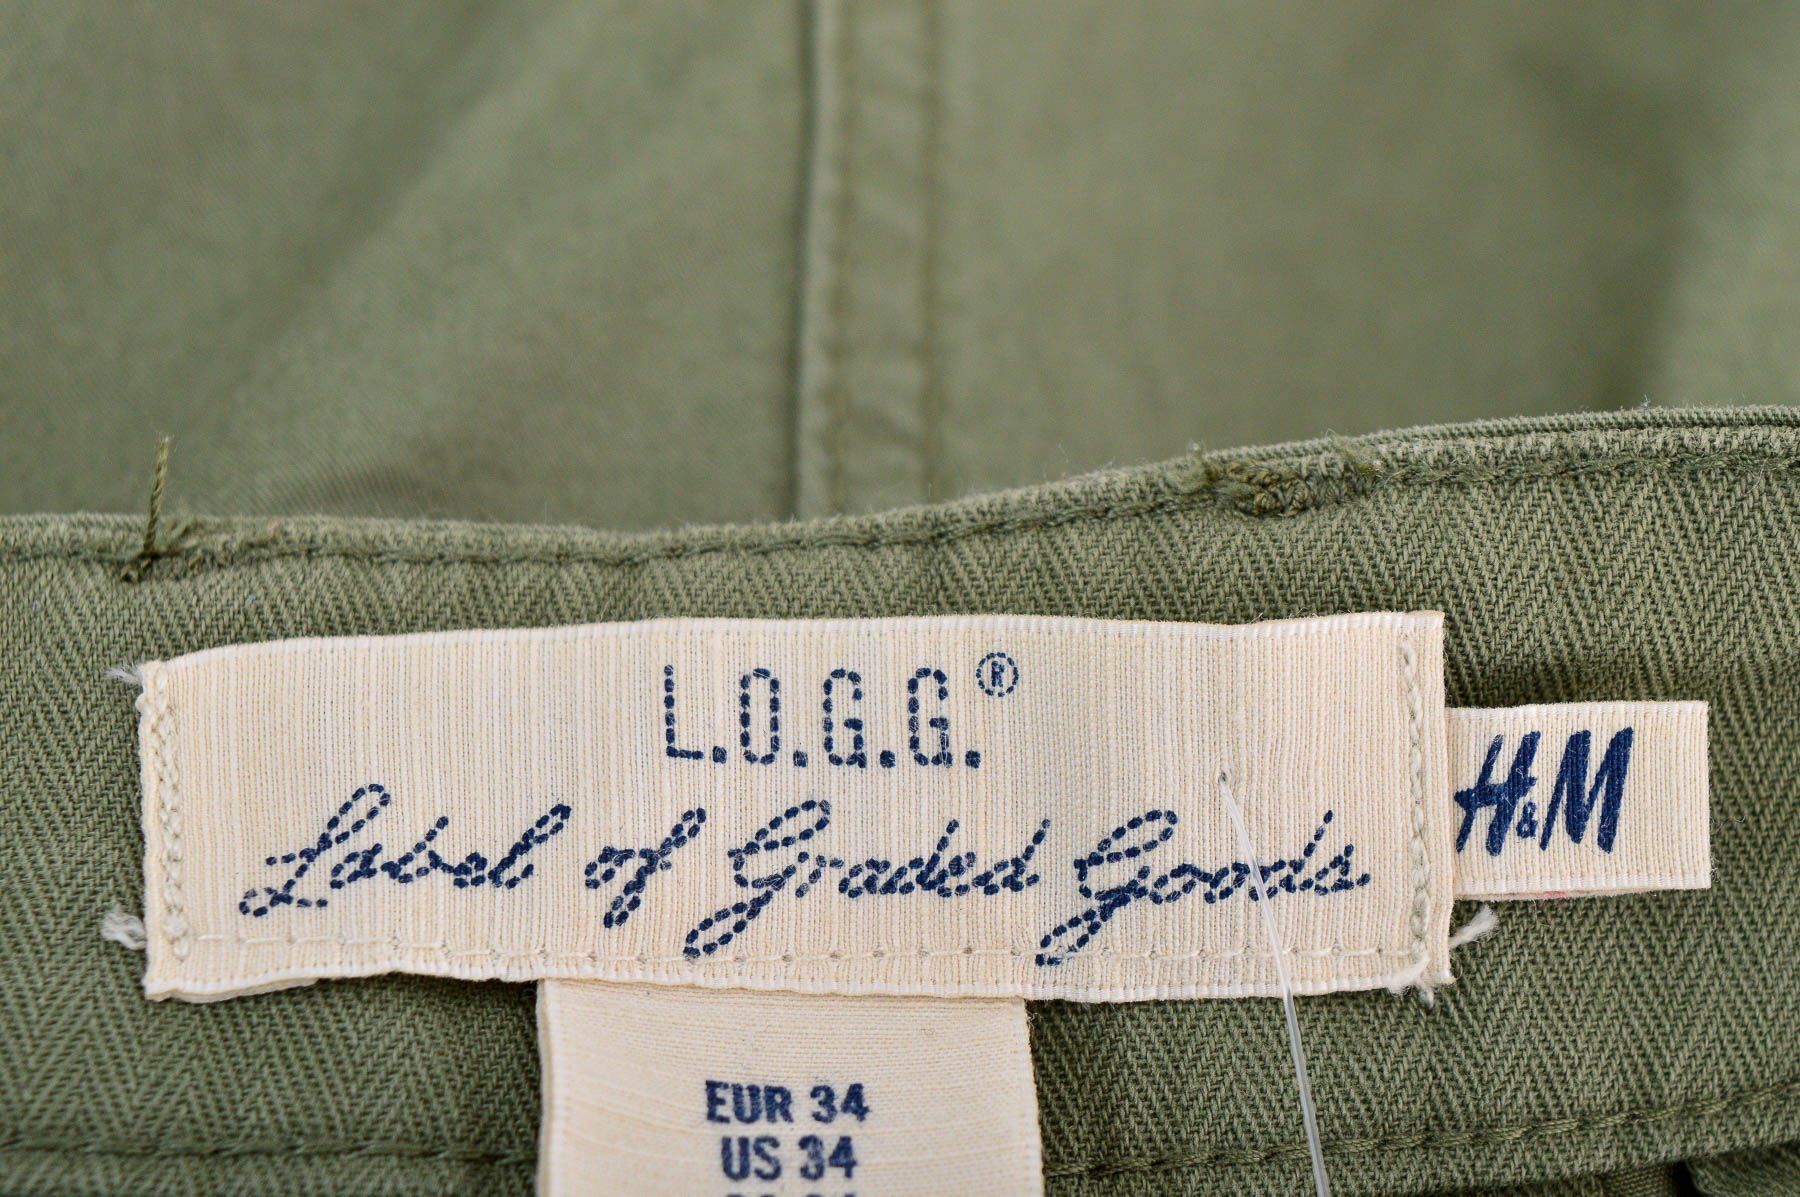 Pantaloni scurți bărbați - L.O.G.G. - 2